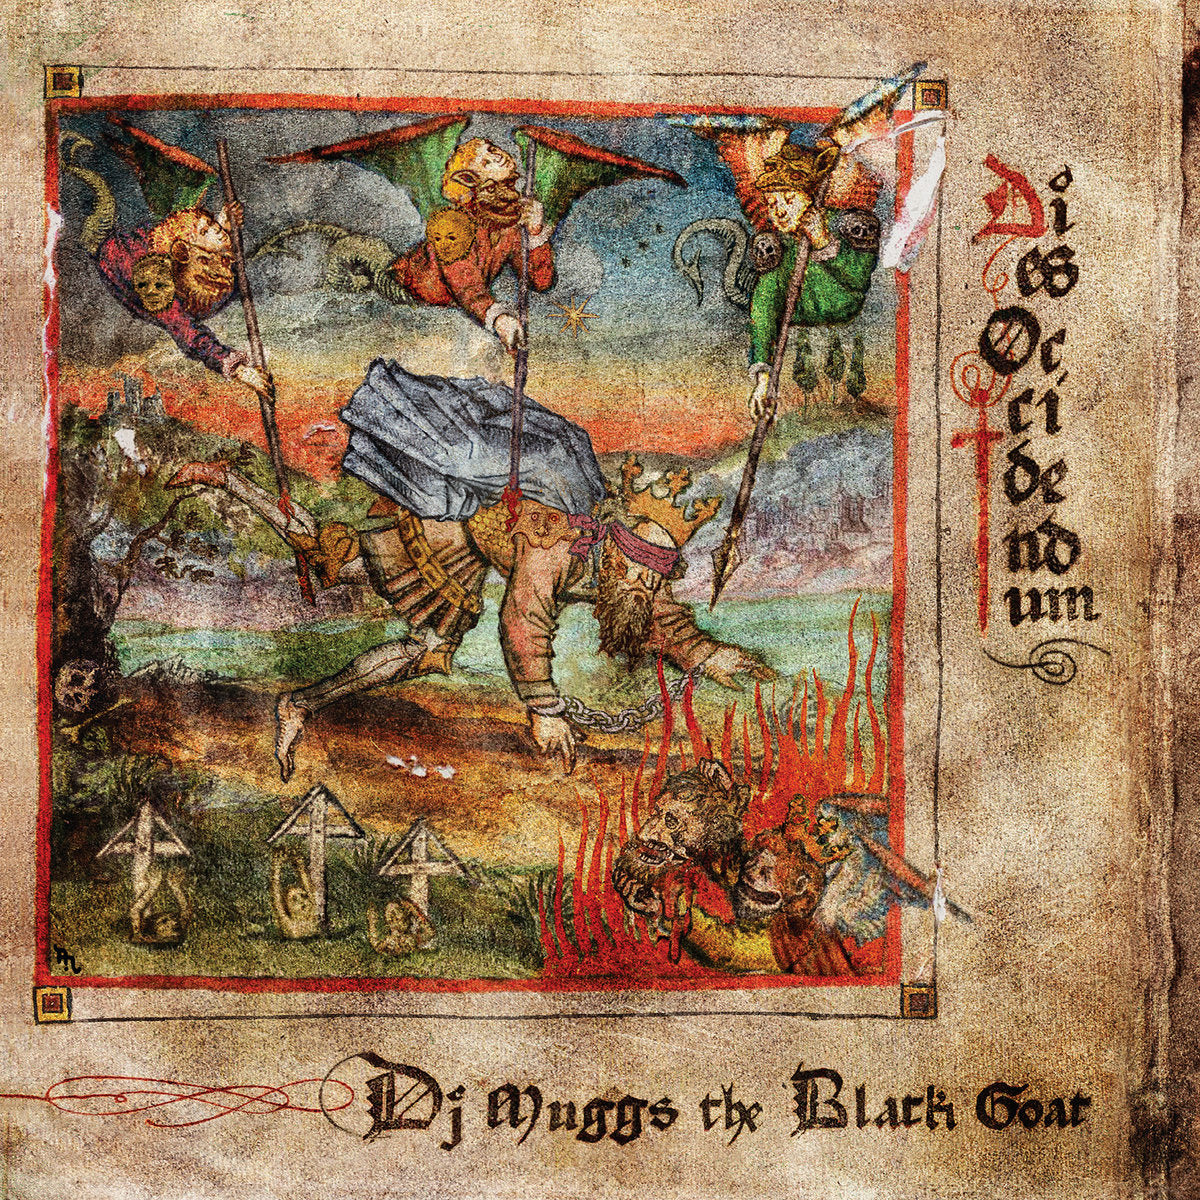 DJ Muggs The Black Goat - Dies Occidendum (Vinyl LP)